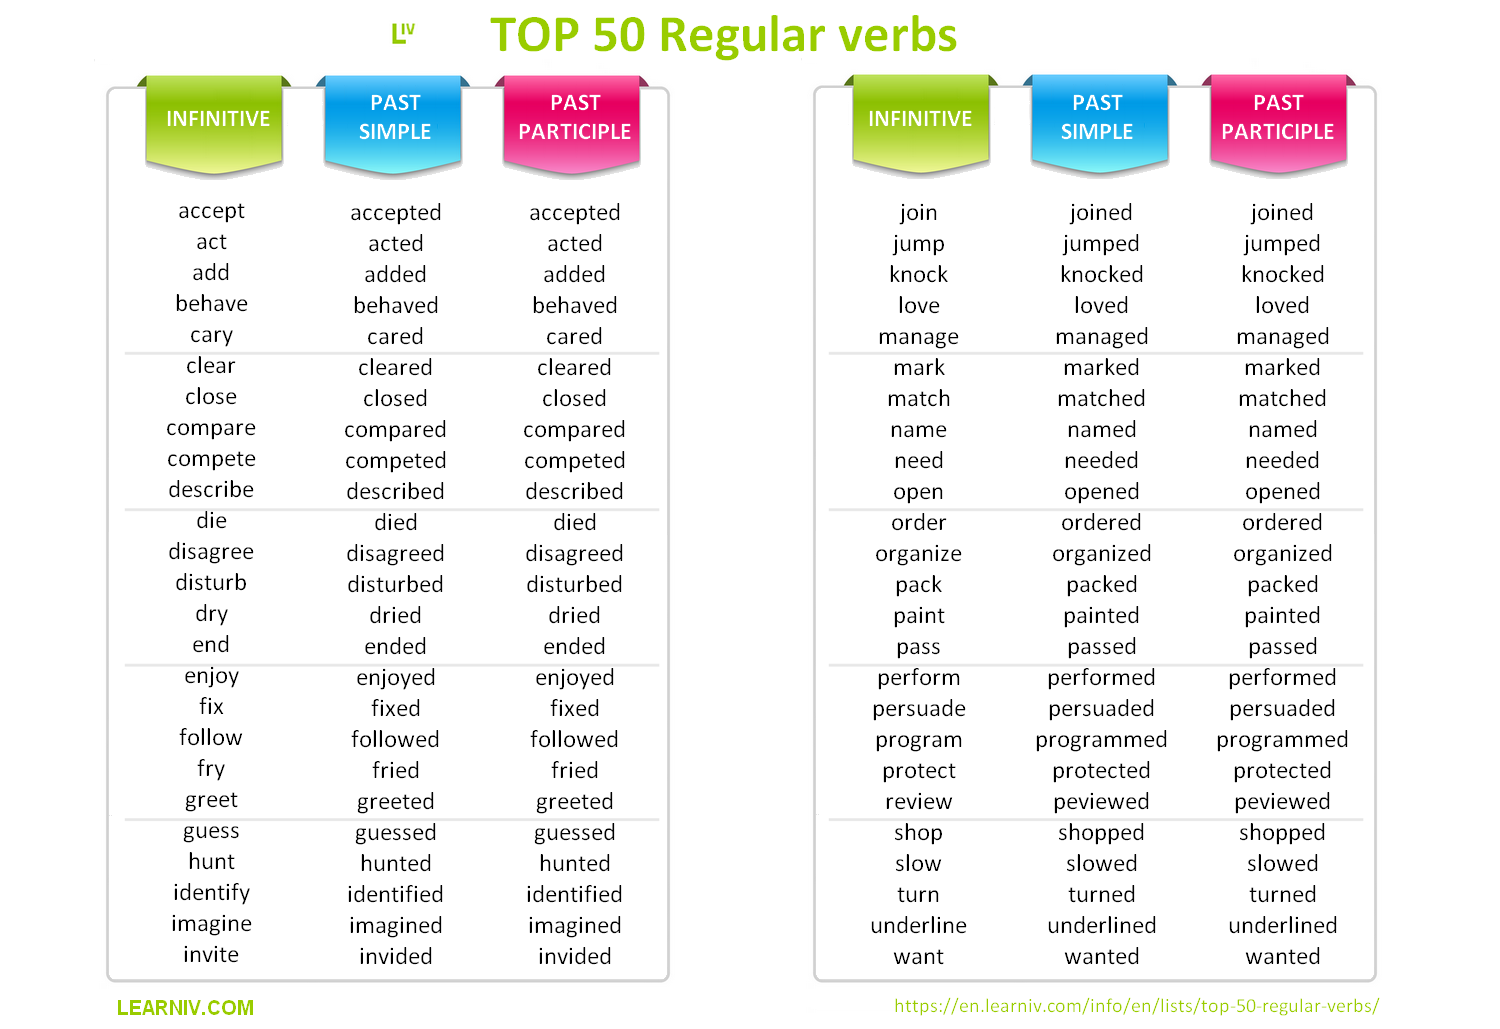 List of TOP 50 Regular verbs